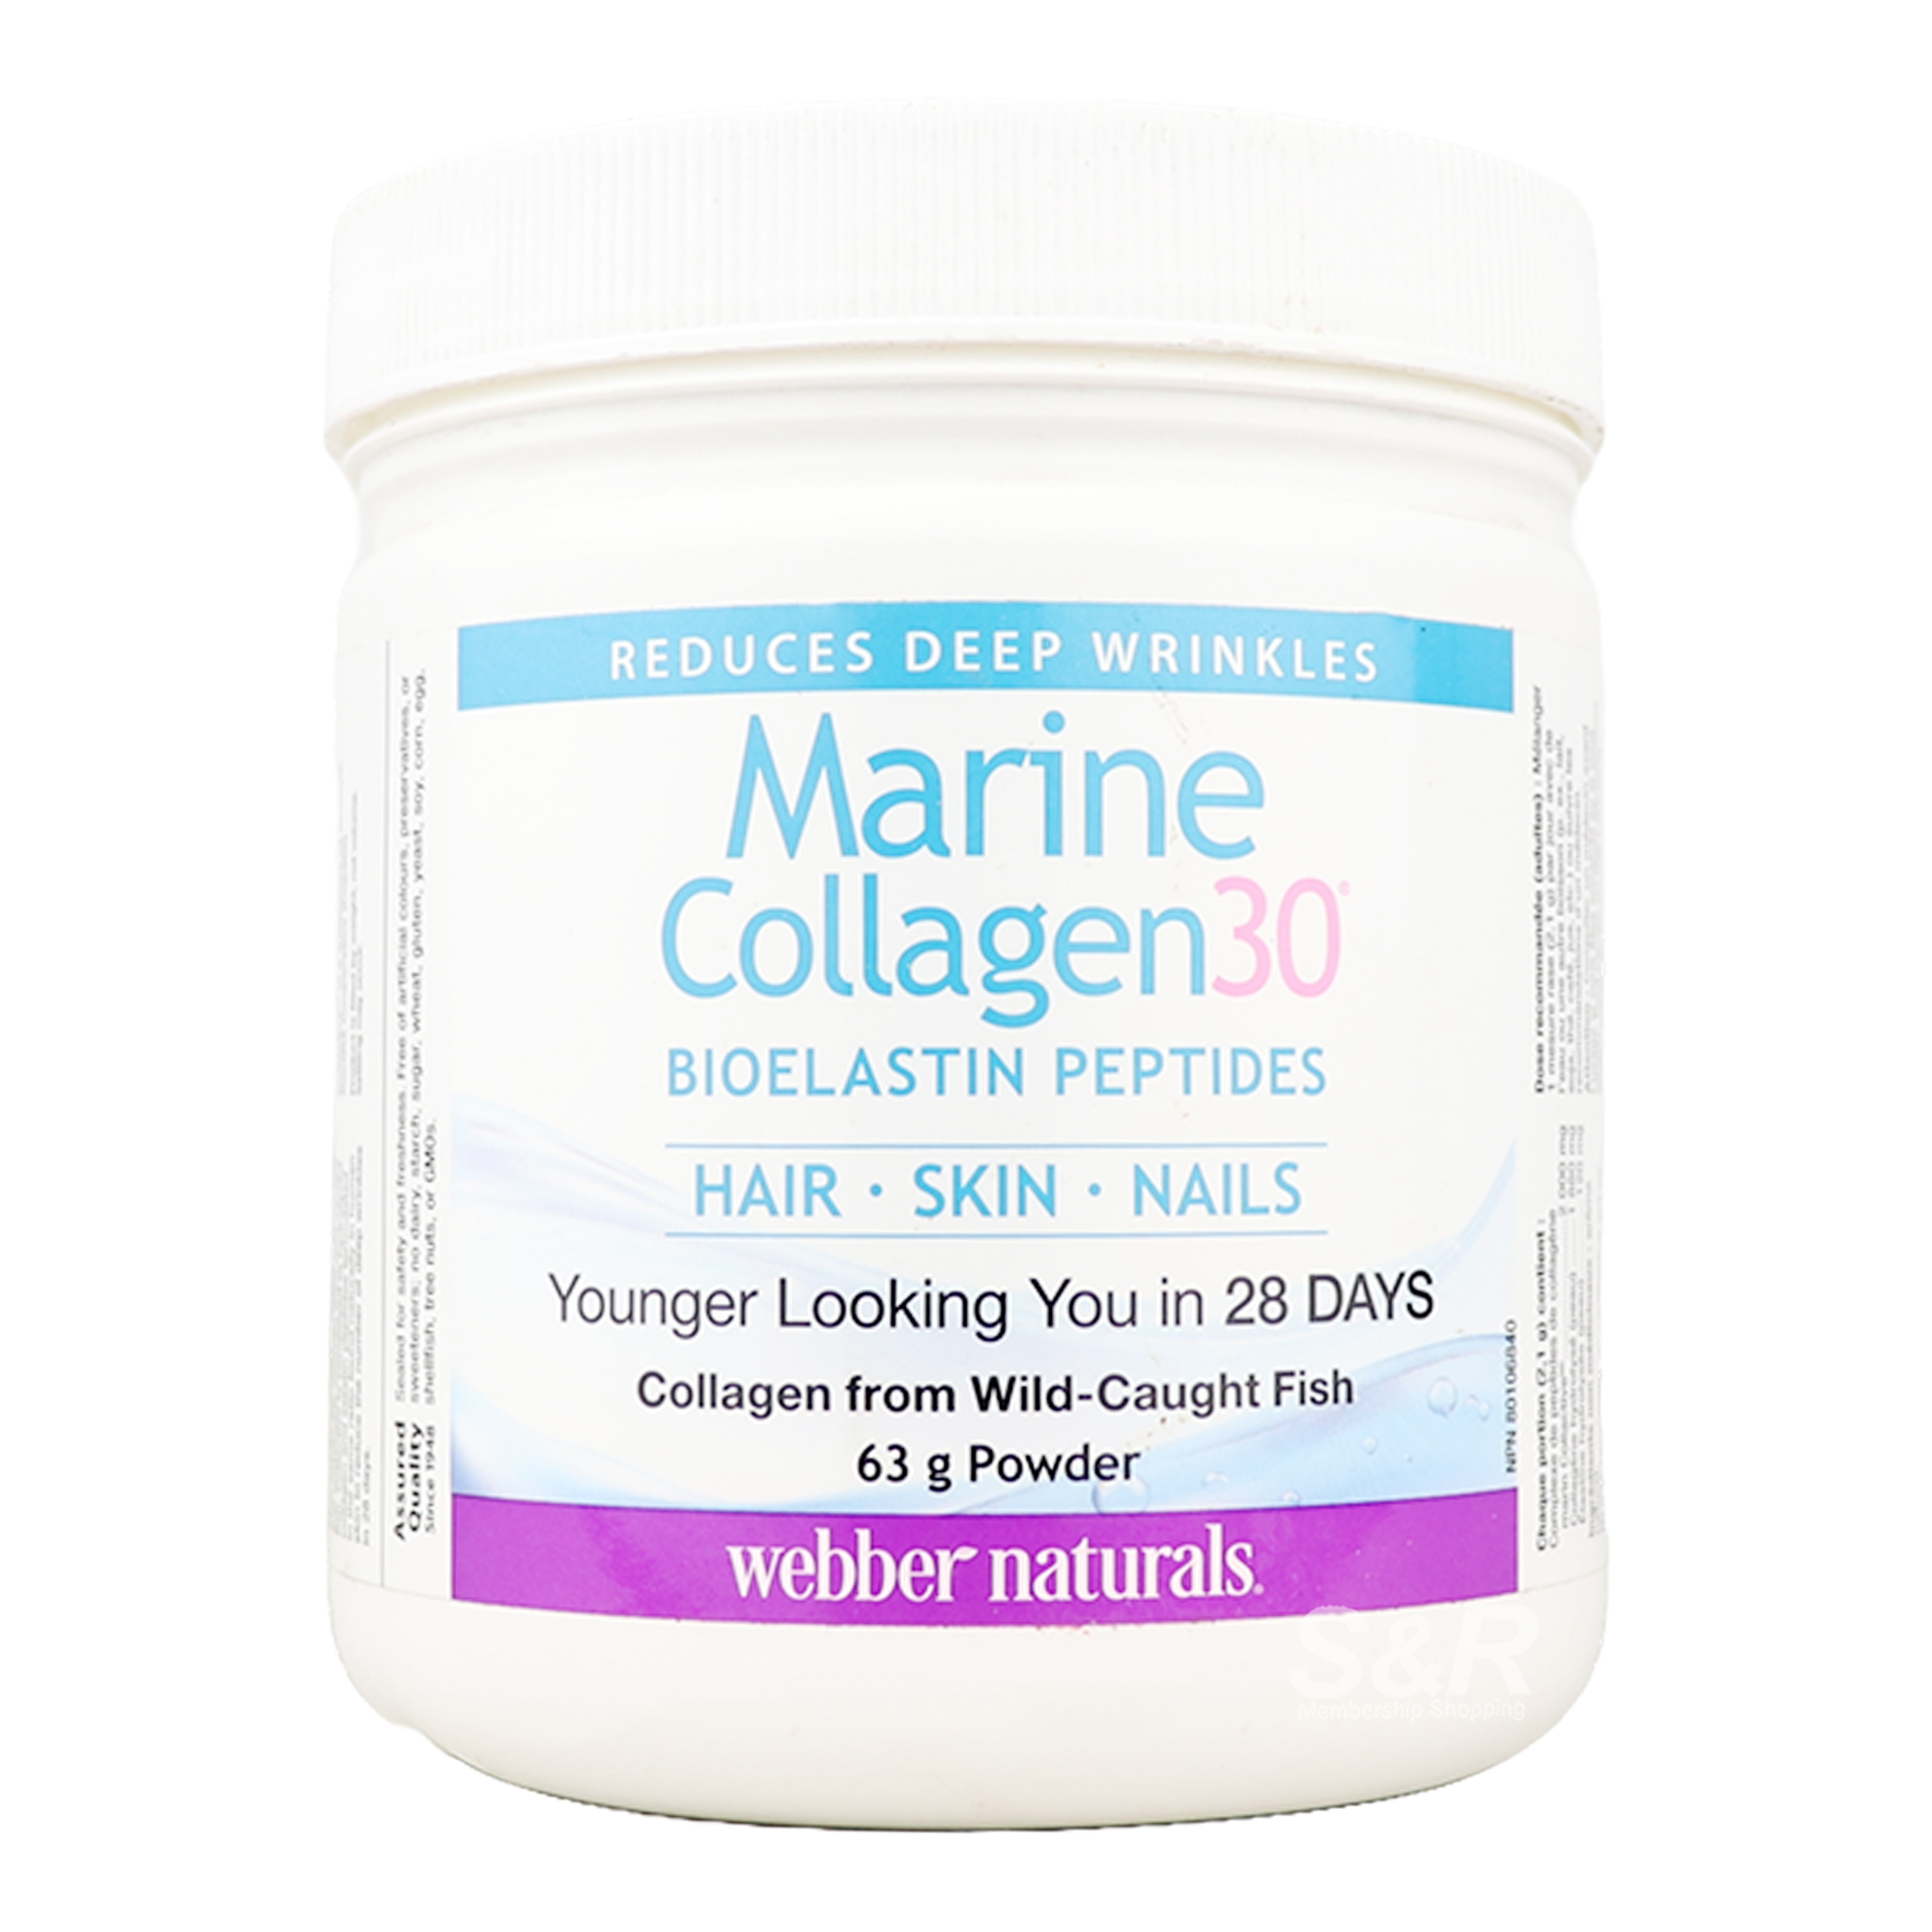 Webber Naturals Marine Collagen30 Bioelastin Peptides 63g